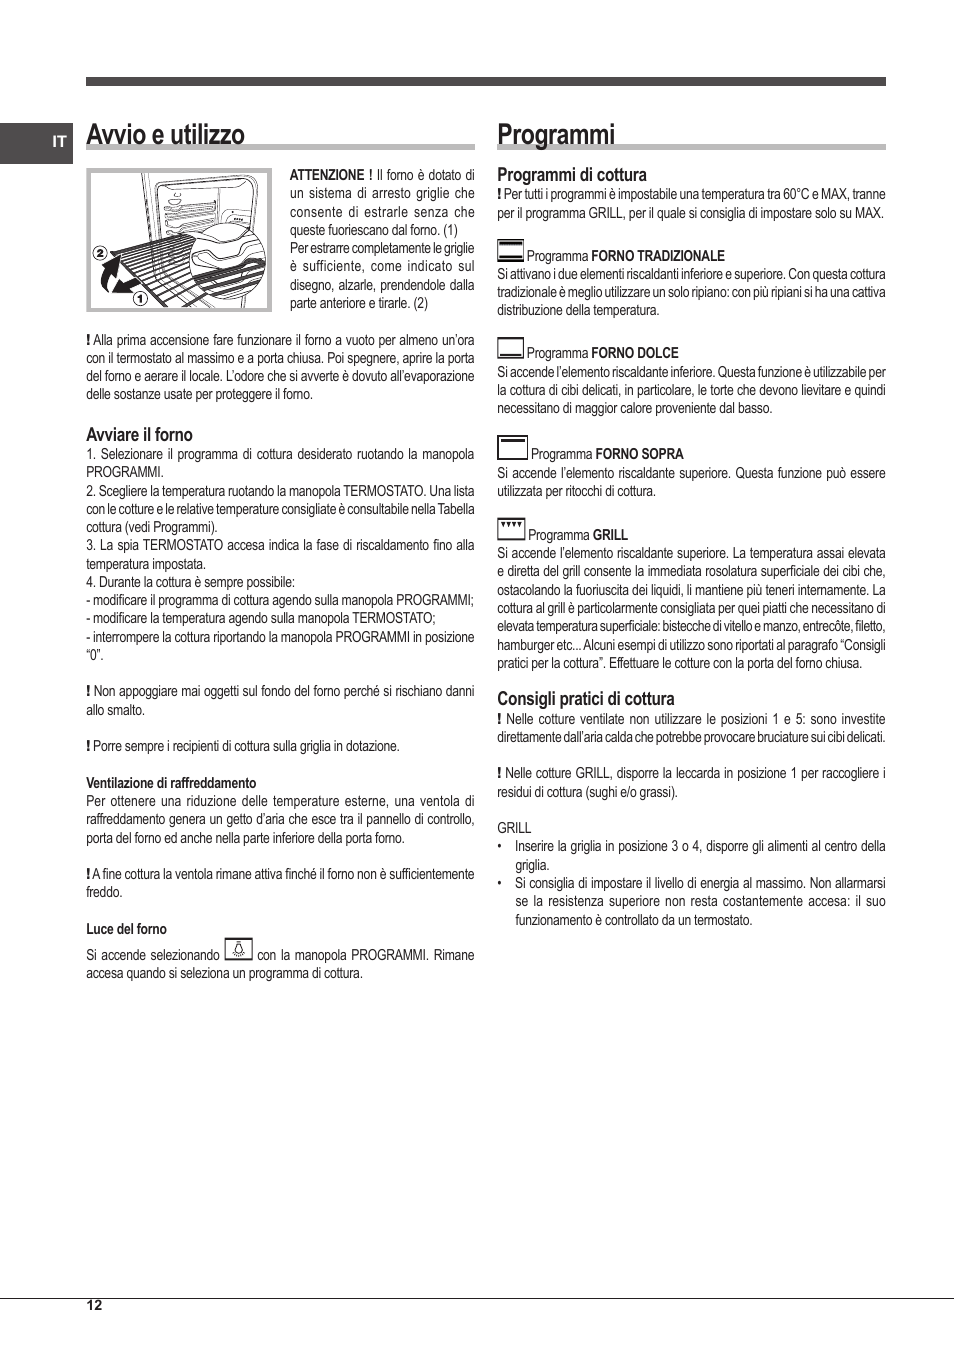 Avvio e utilizzo, Programmi, Avviare il forno | Indesit FIM-20-K.A-IX-S  User Manual | Page 12 / 48 | Original mode